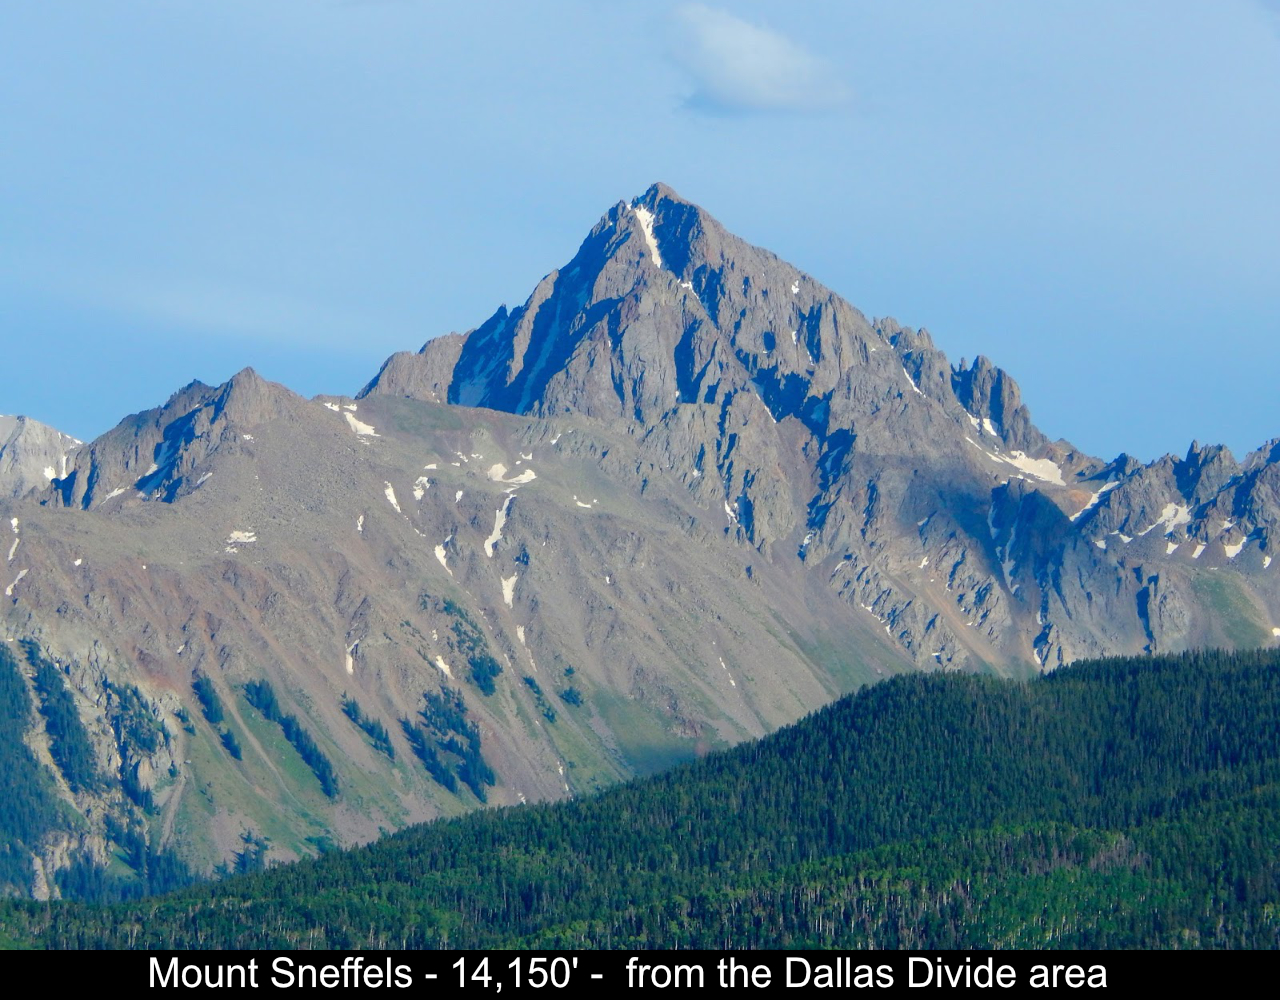 Mount Sneffels